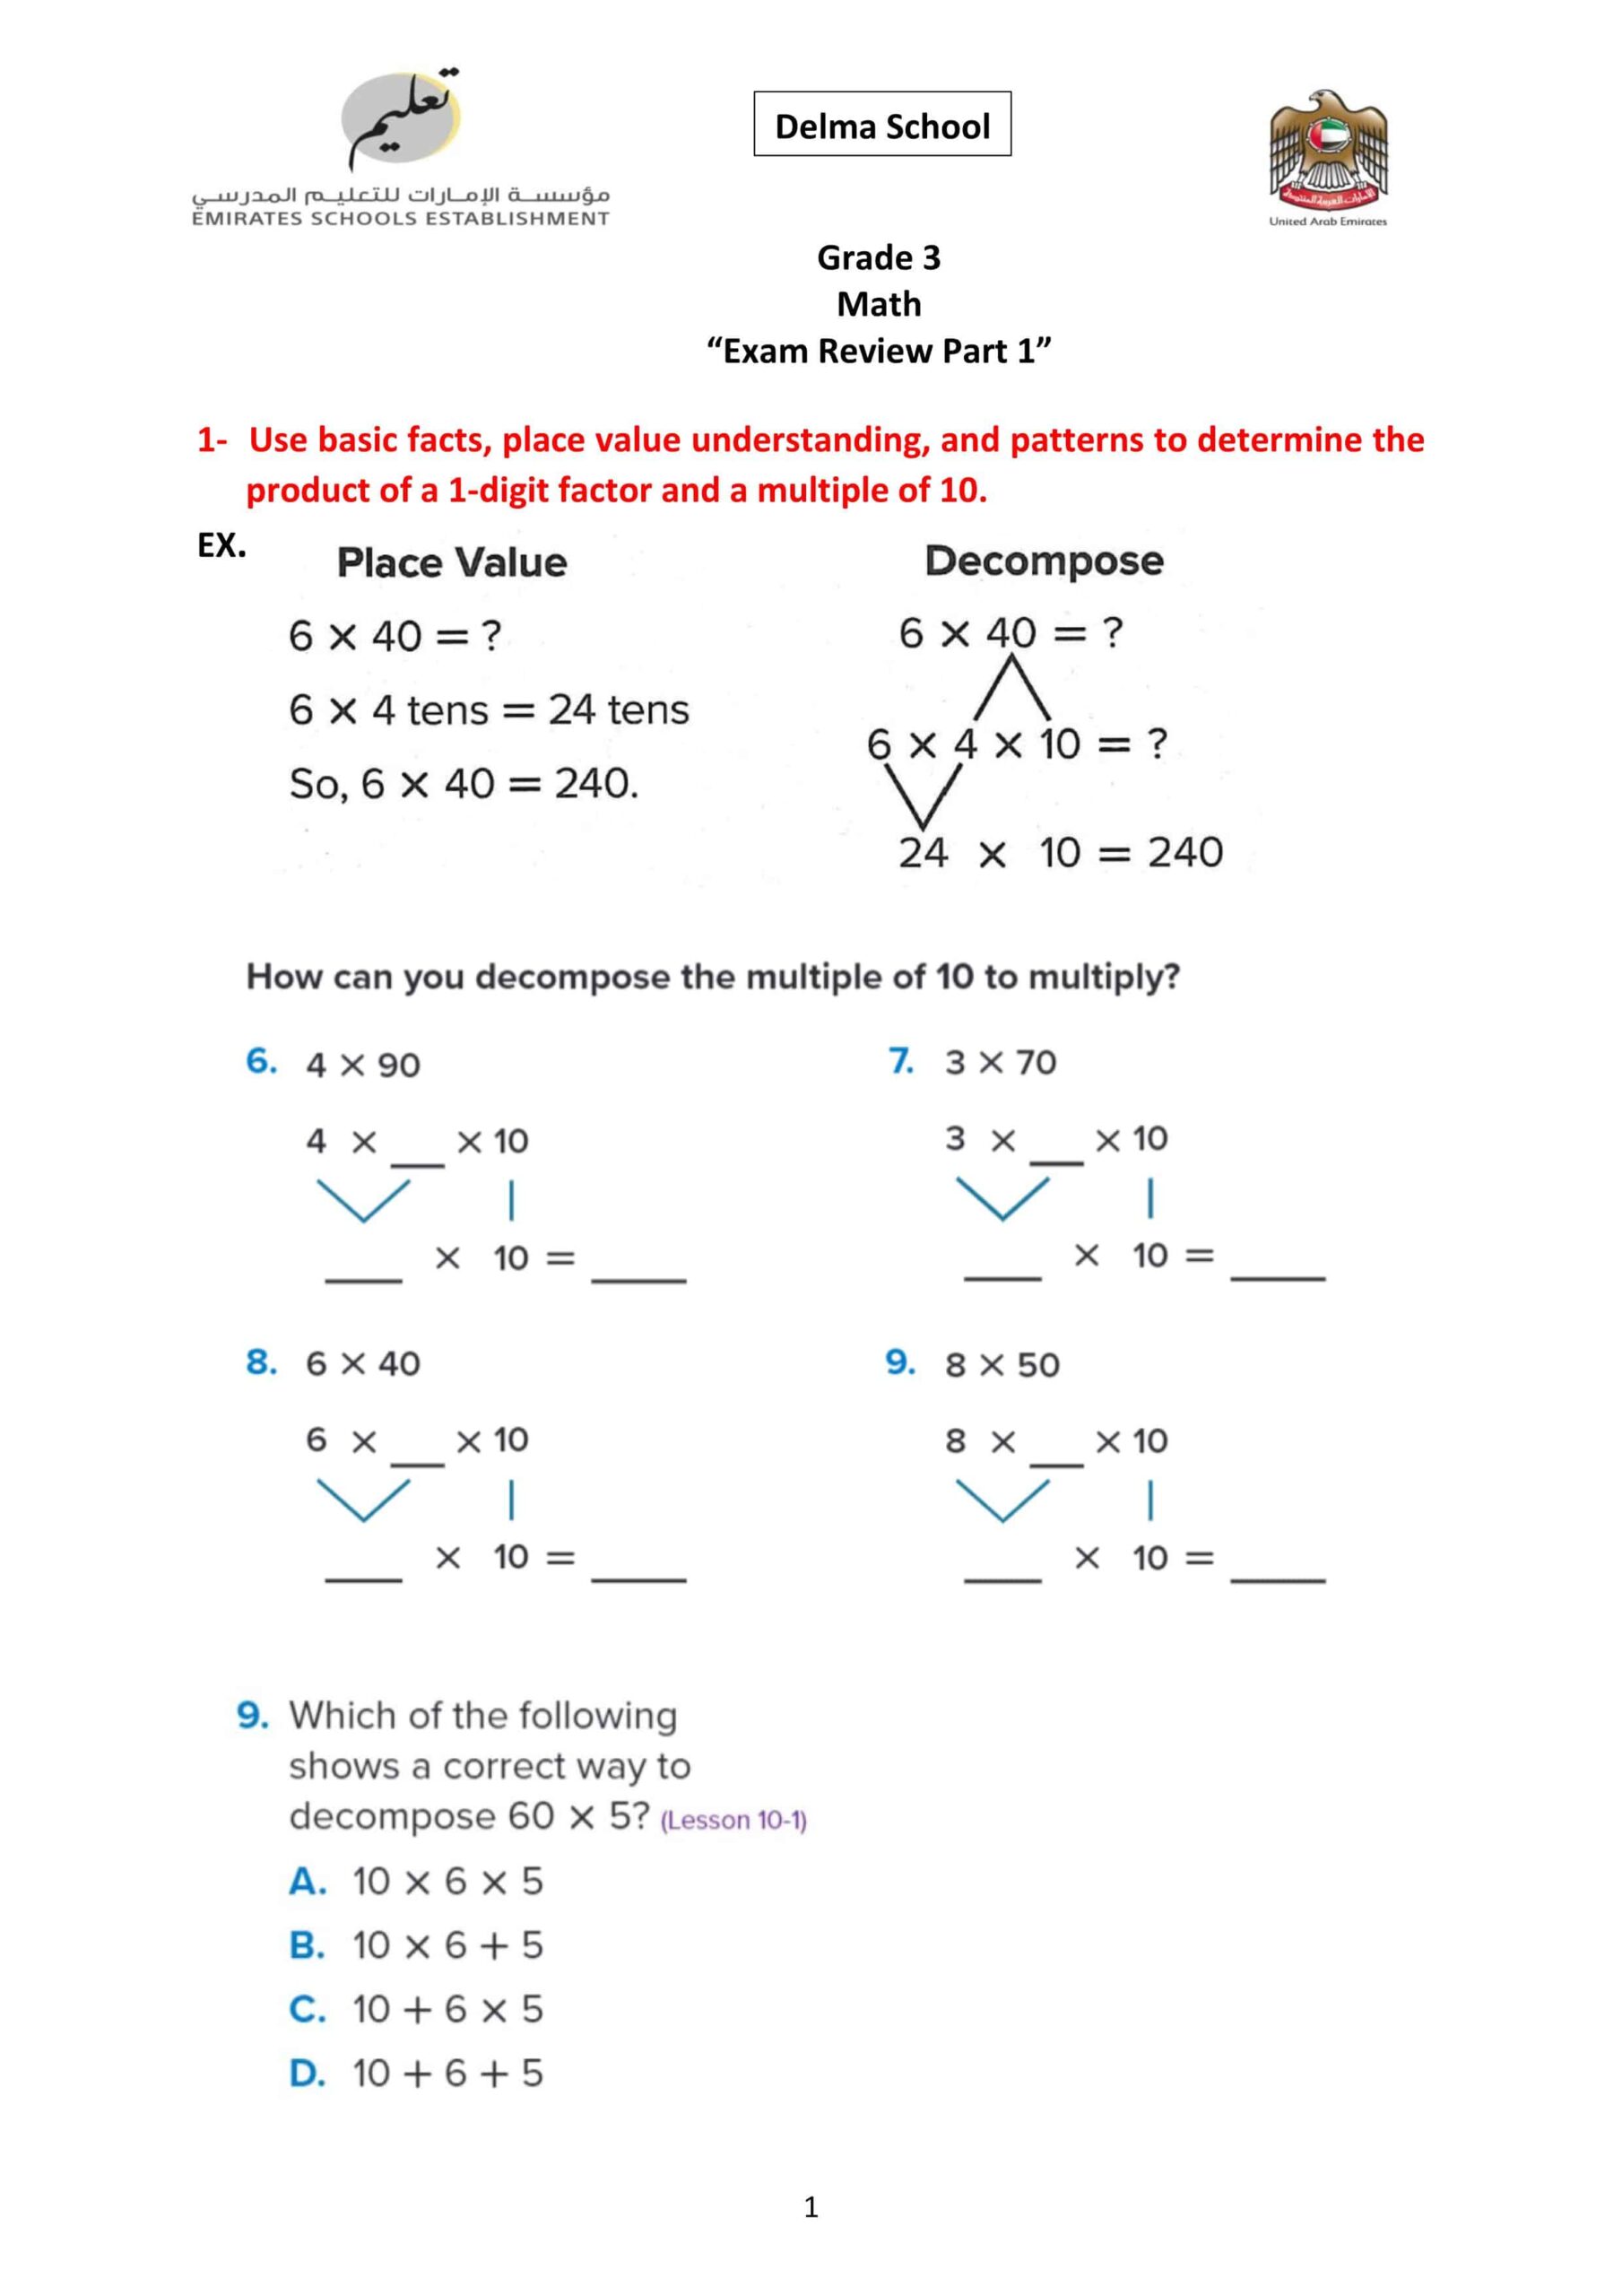 حل أوراق عمل أسئلة هيكلة امتحان الرياضيات المتكاملة الصف الثالث